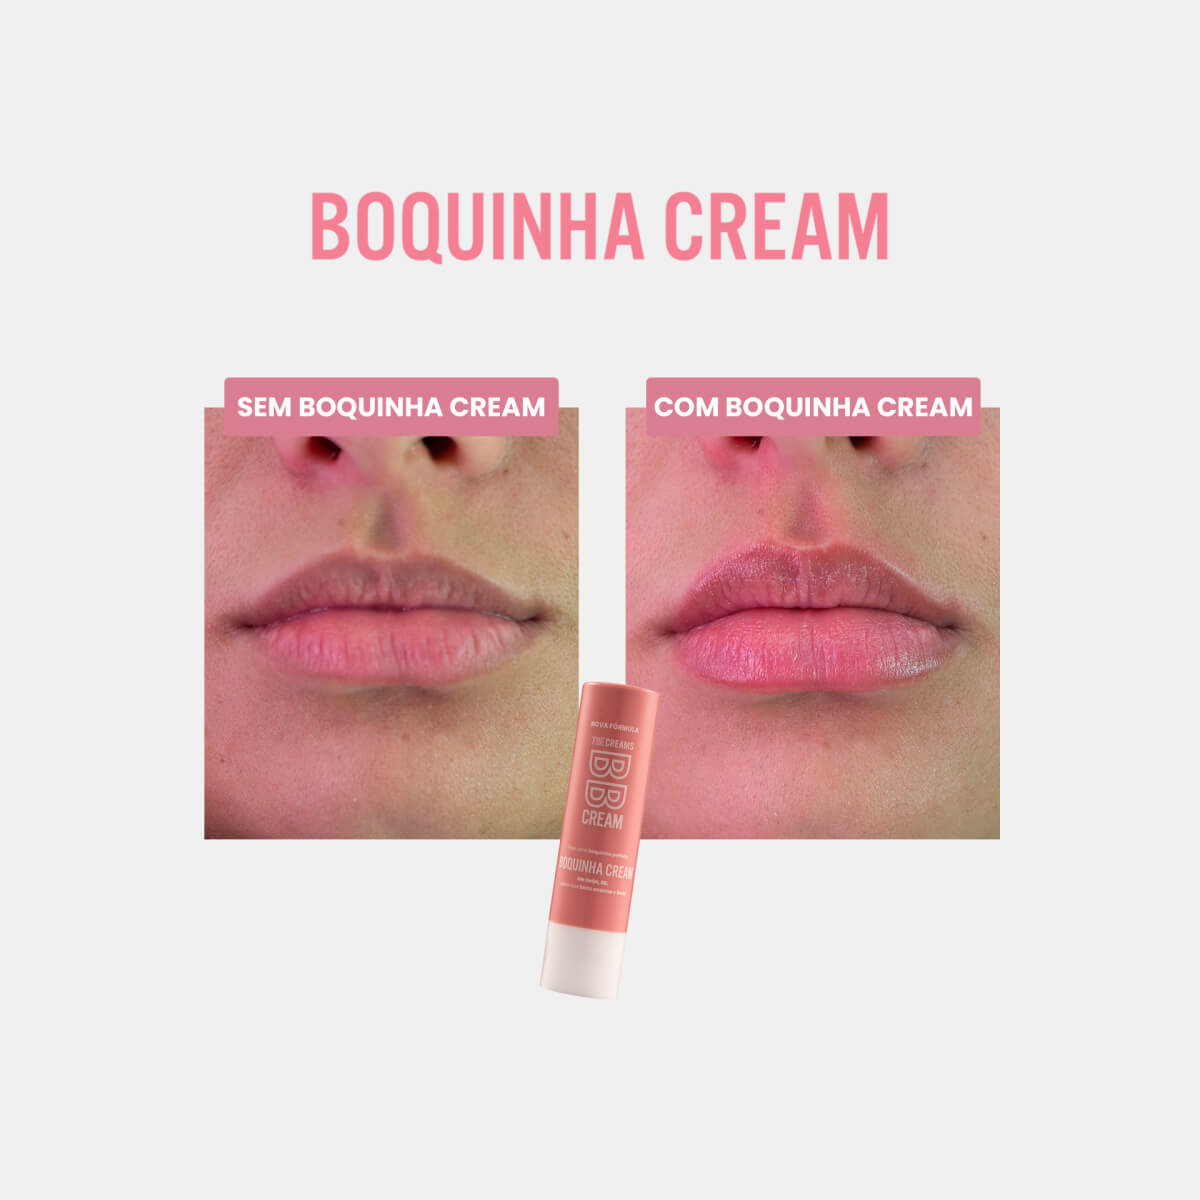 Boquinha Cream - BELEZA BRASILEIRAlip balm